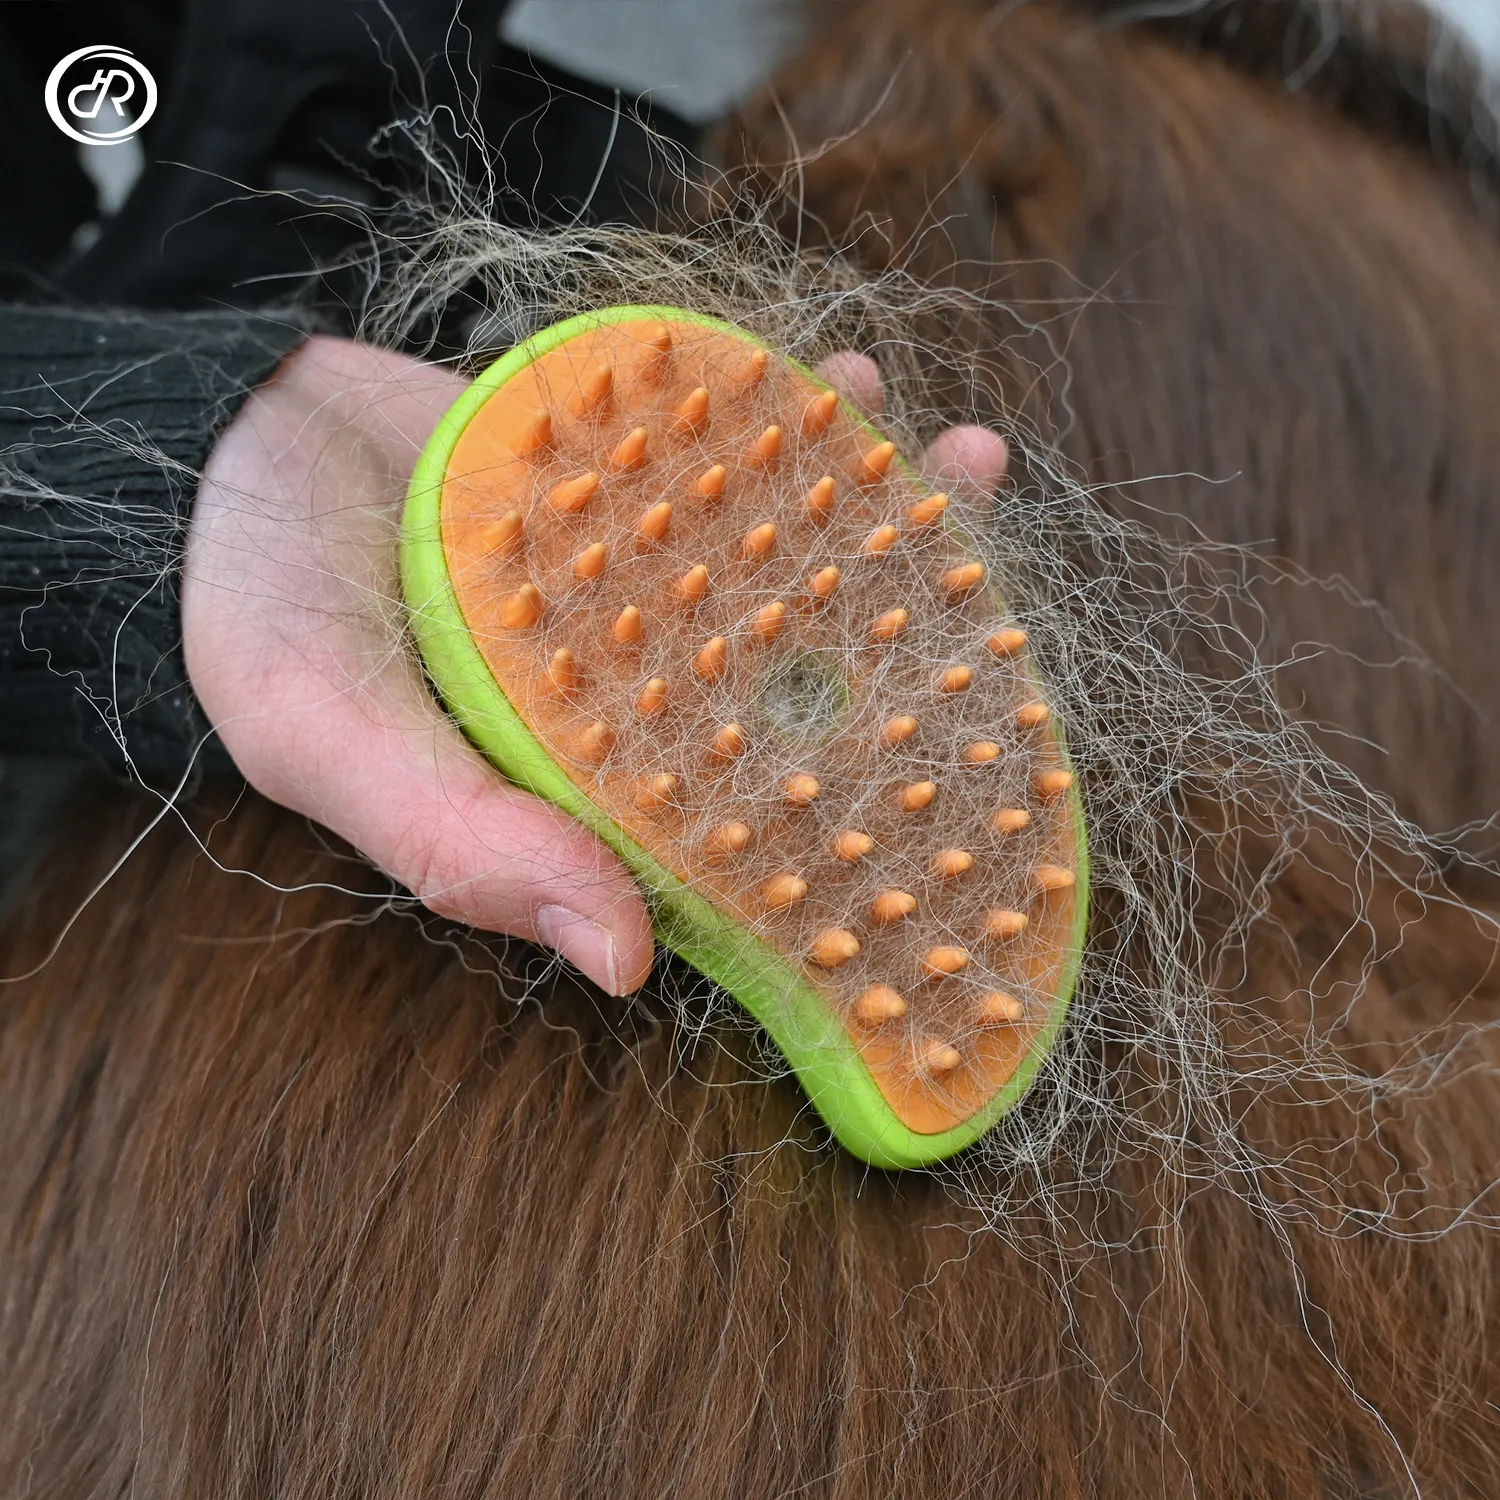 Şarj edilebilir fabrika kuru islak silikon masaj aleti çok fonksiyonlu 3 1 pet saç temizleyici fırça köpek kedi buharlı fırça